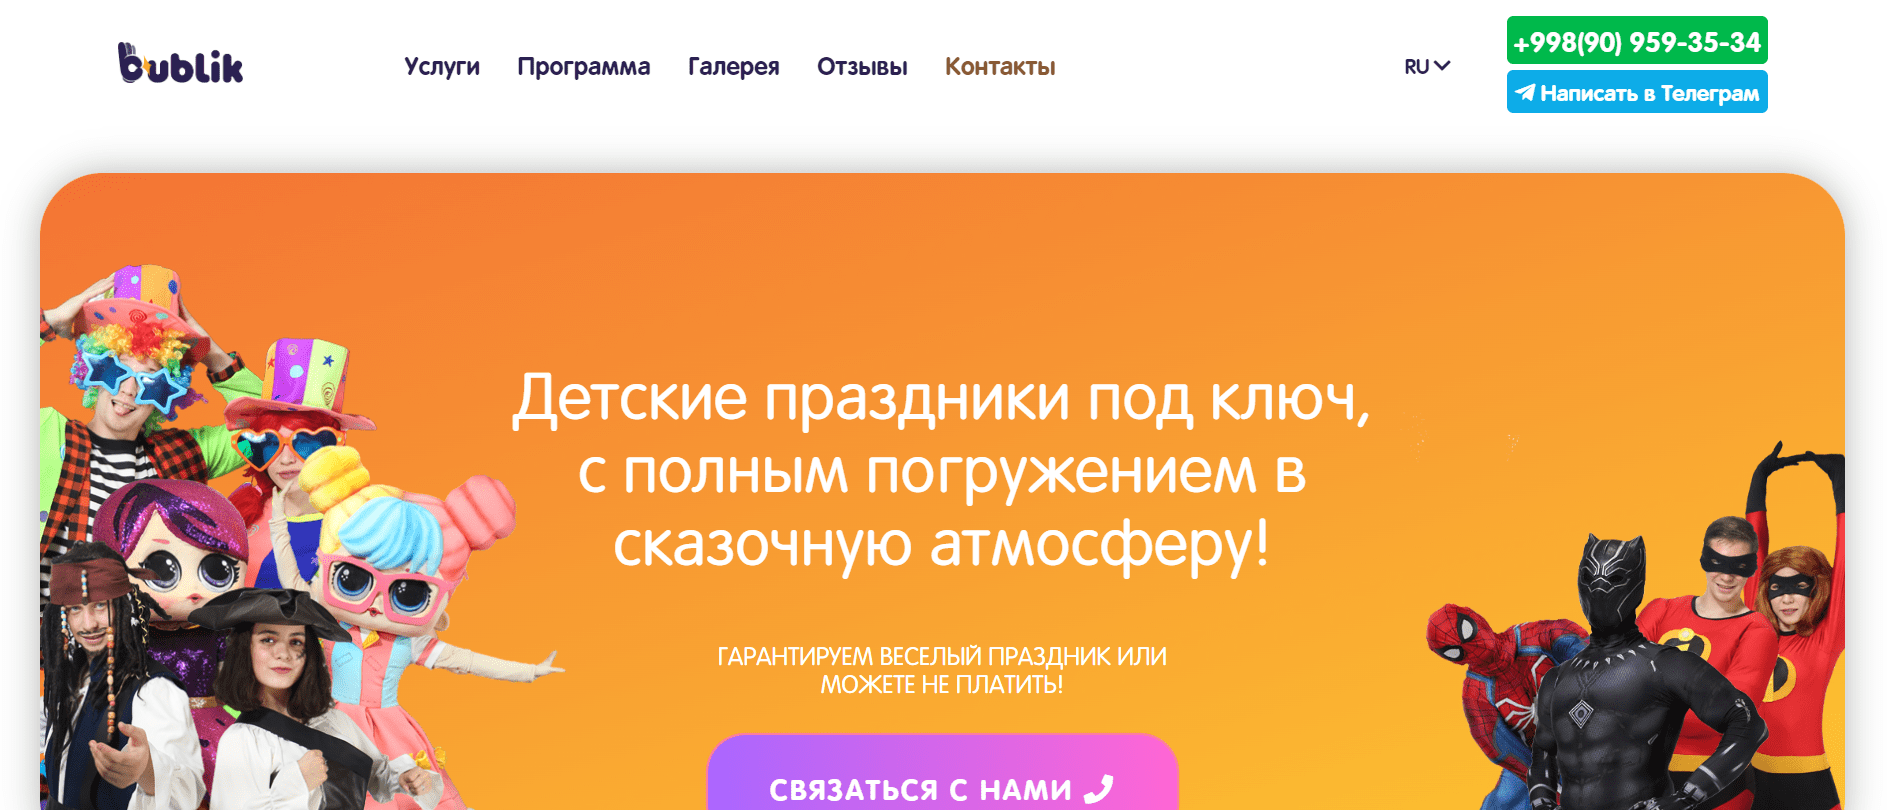 Bublik.uz - официальный сайт